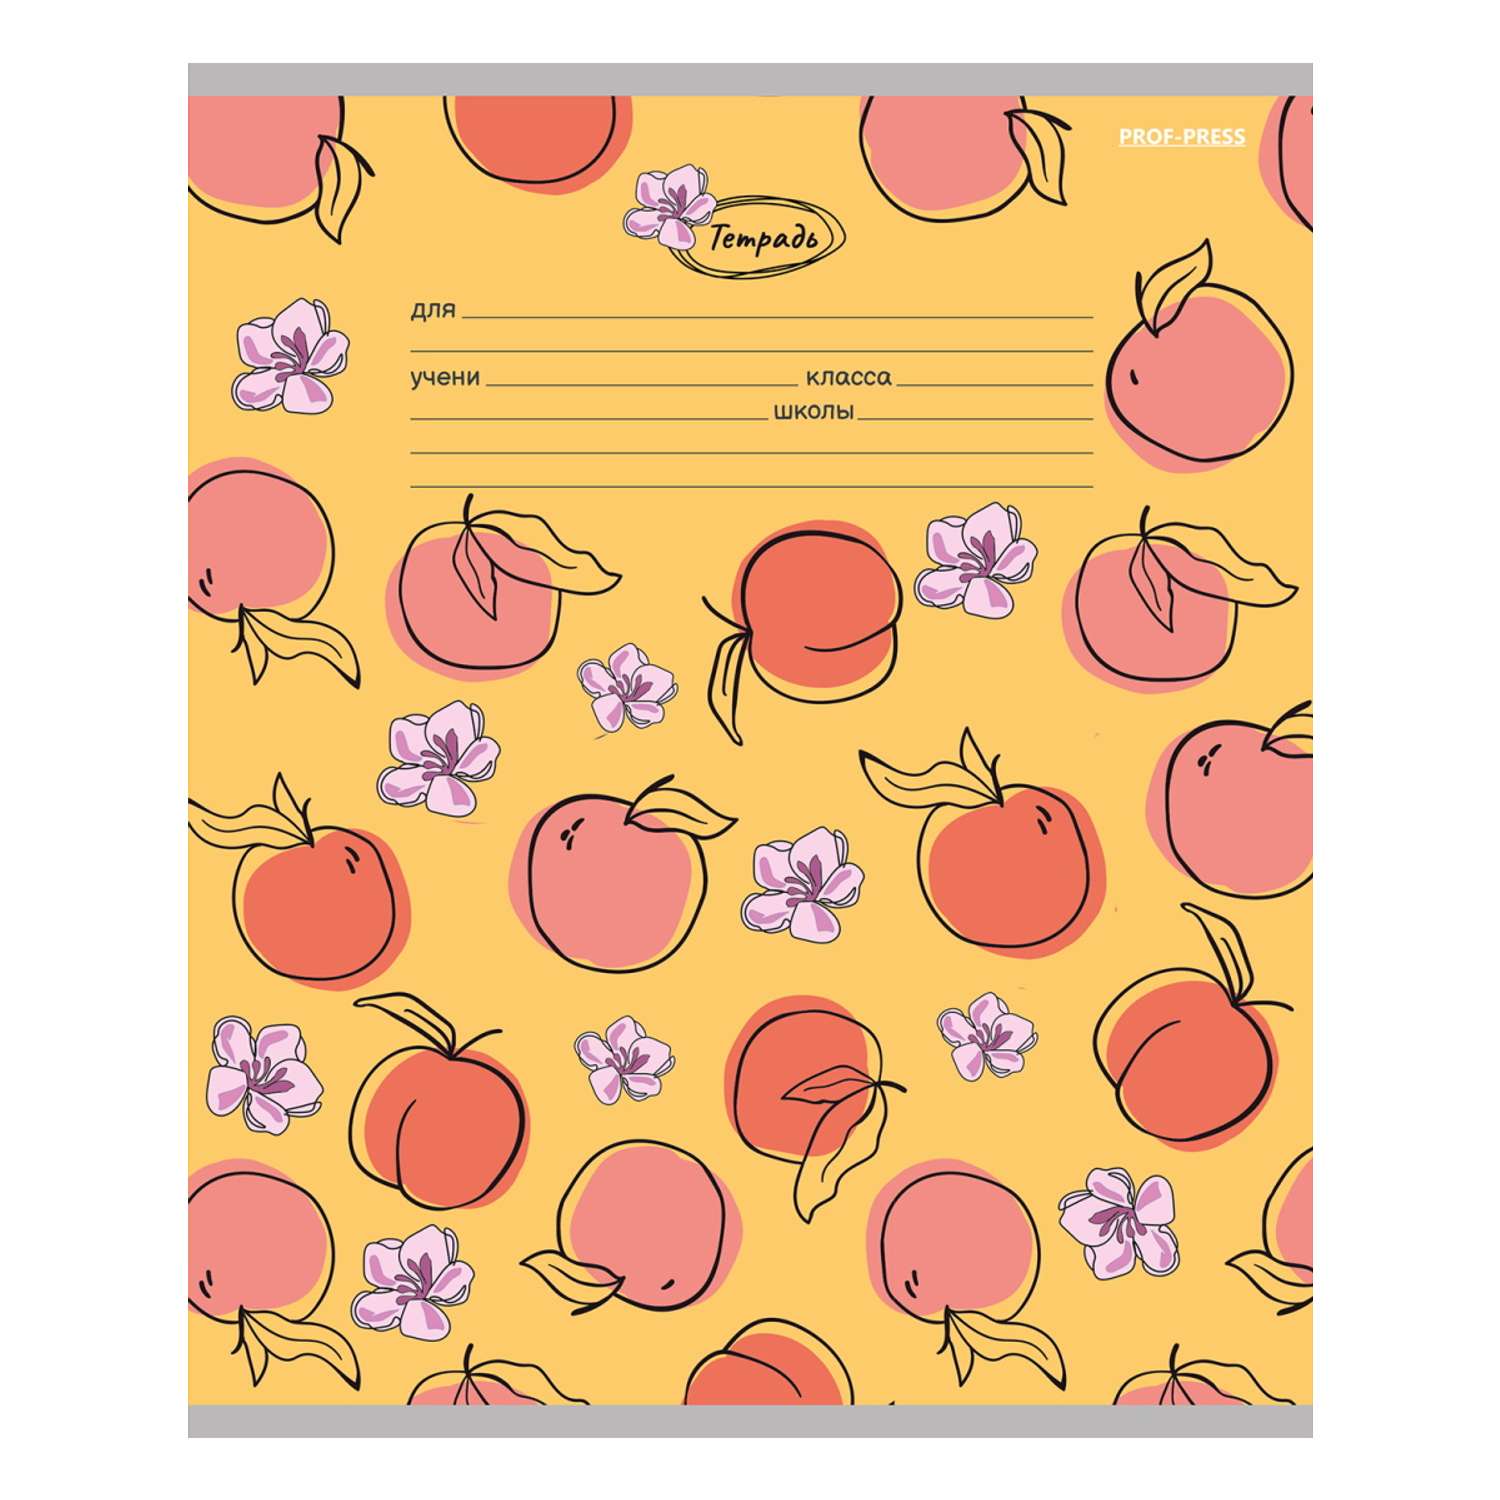 Тетради Prof Press Линия 18л. ягодки и цветы цветная мелованная обложка комплект 10 штук - фото 6